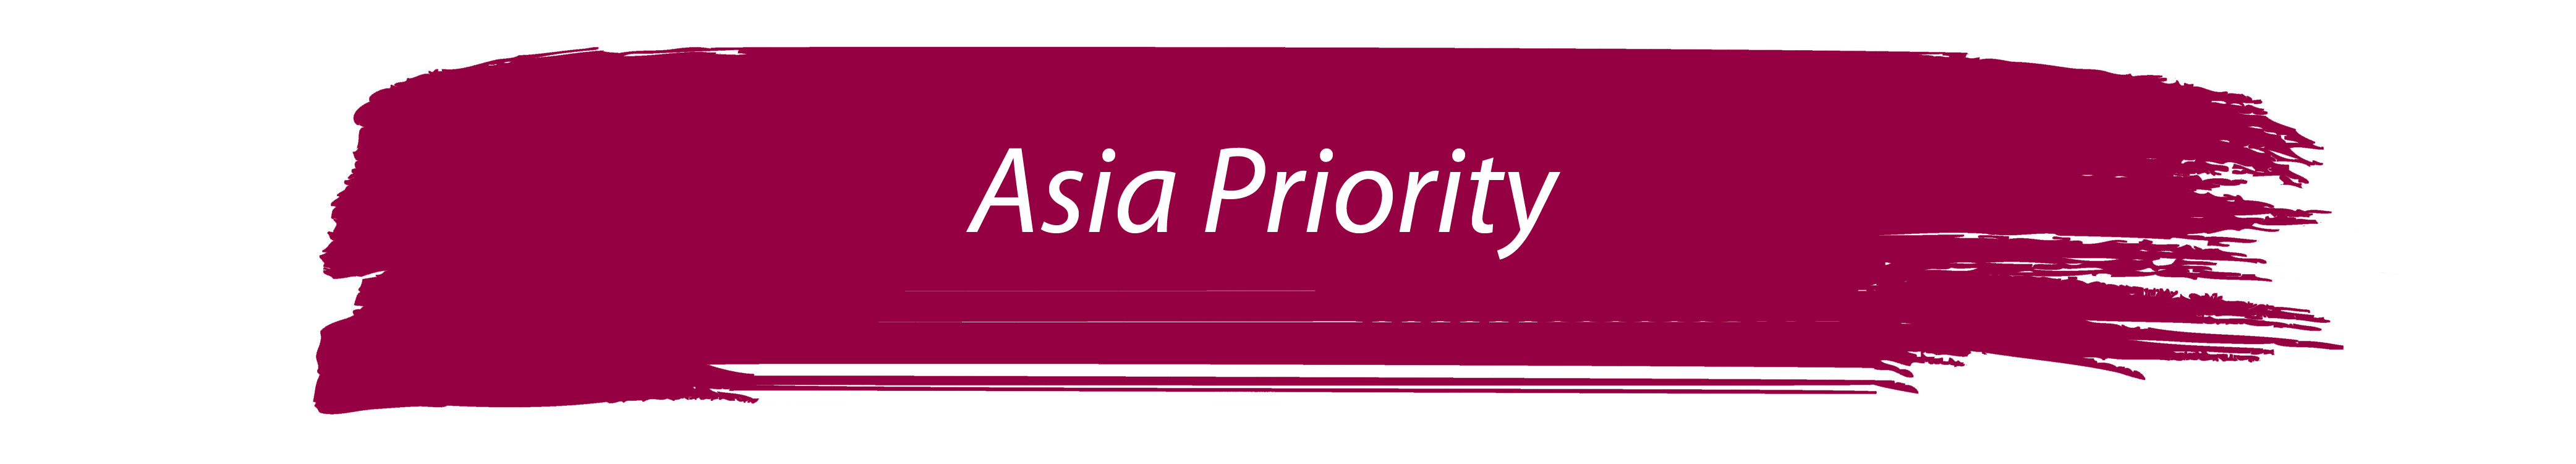 Asia Priority